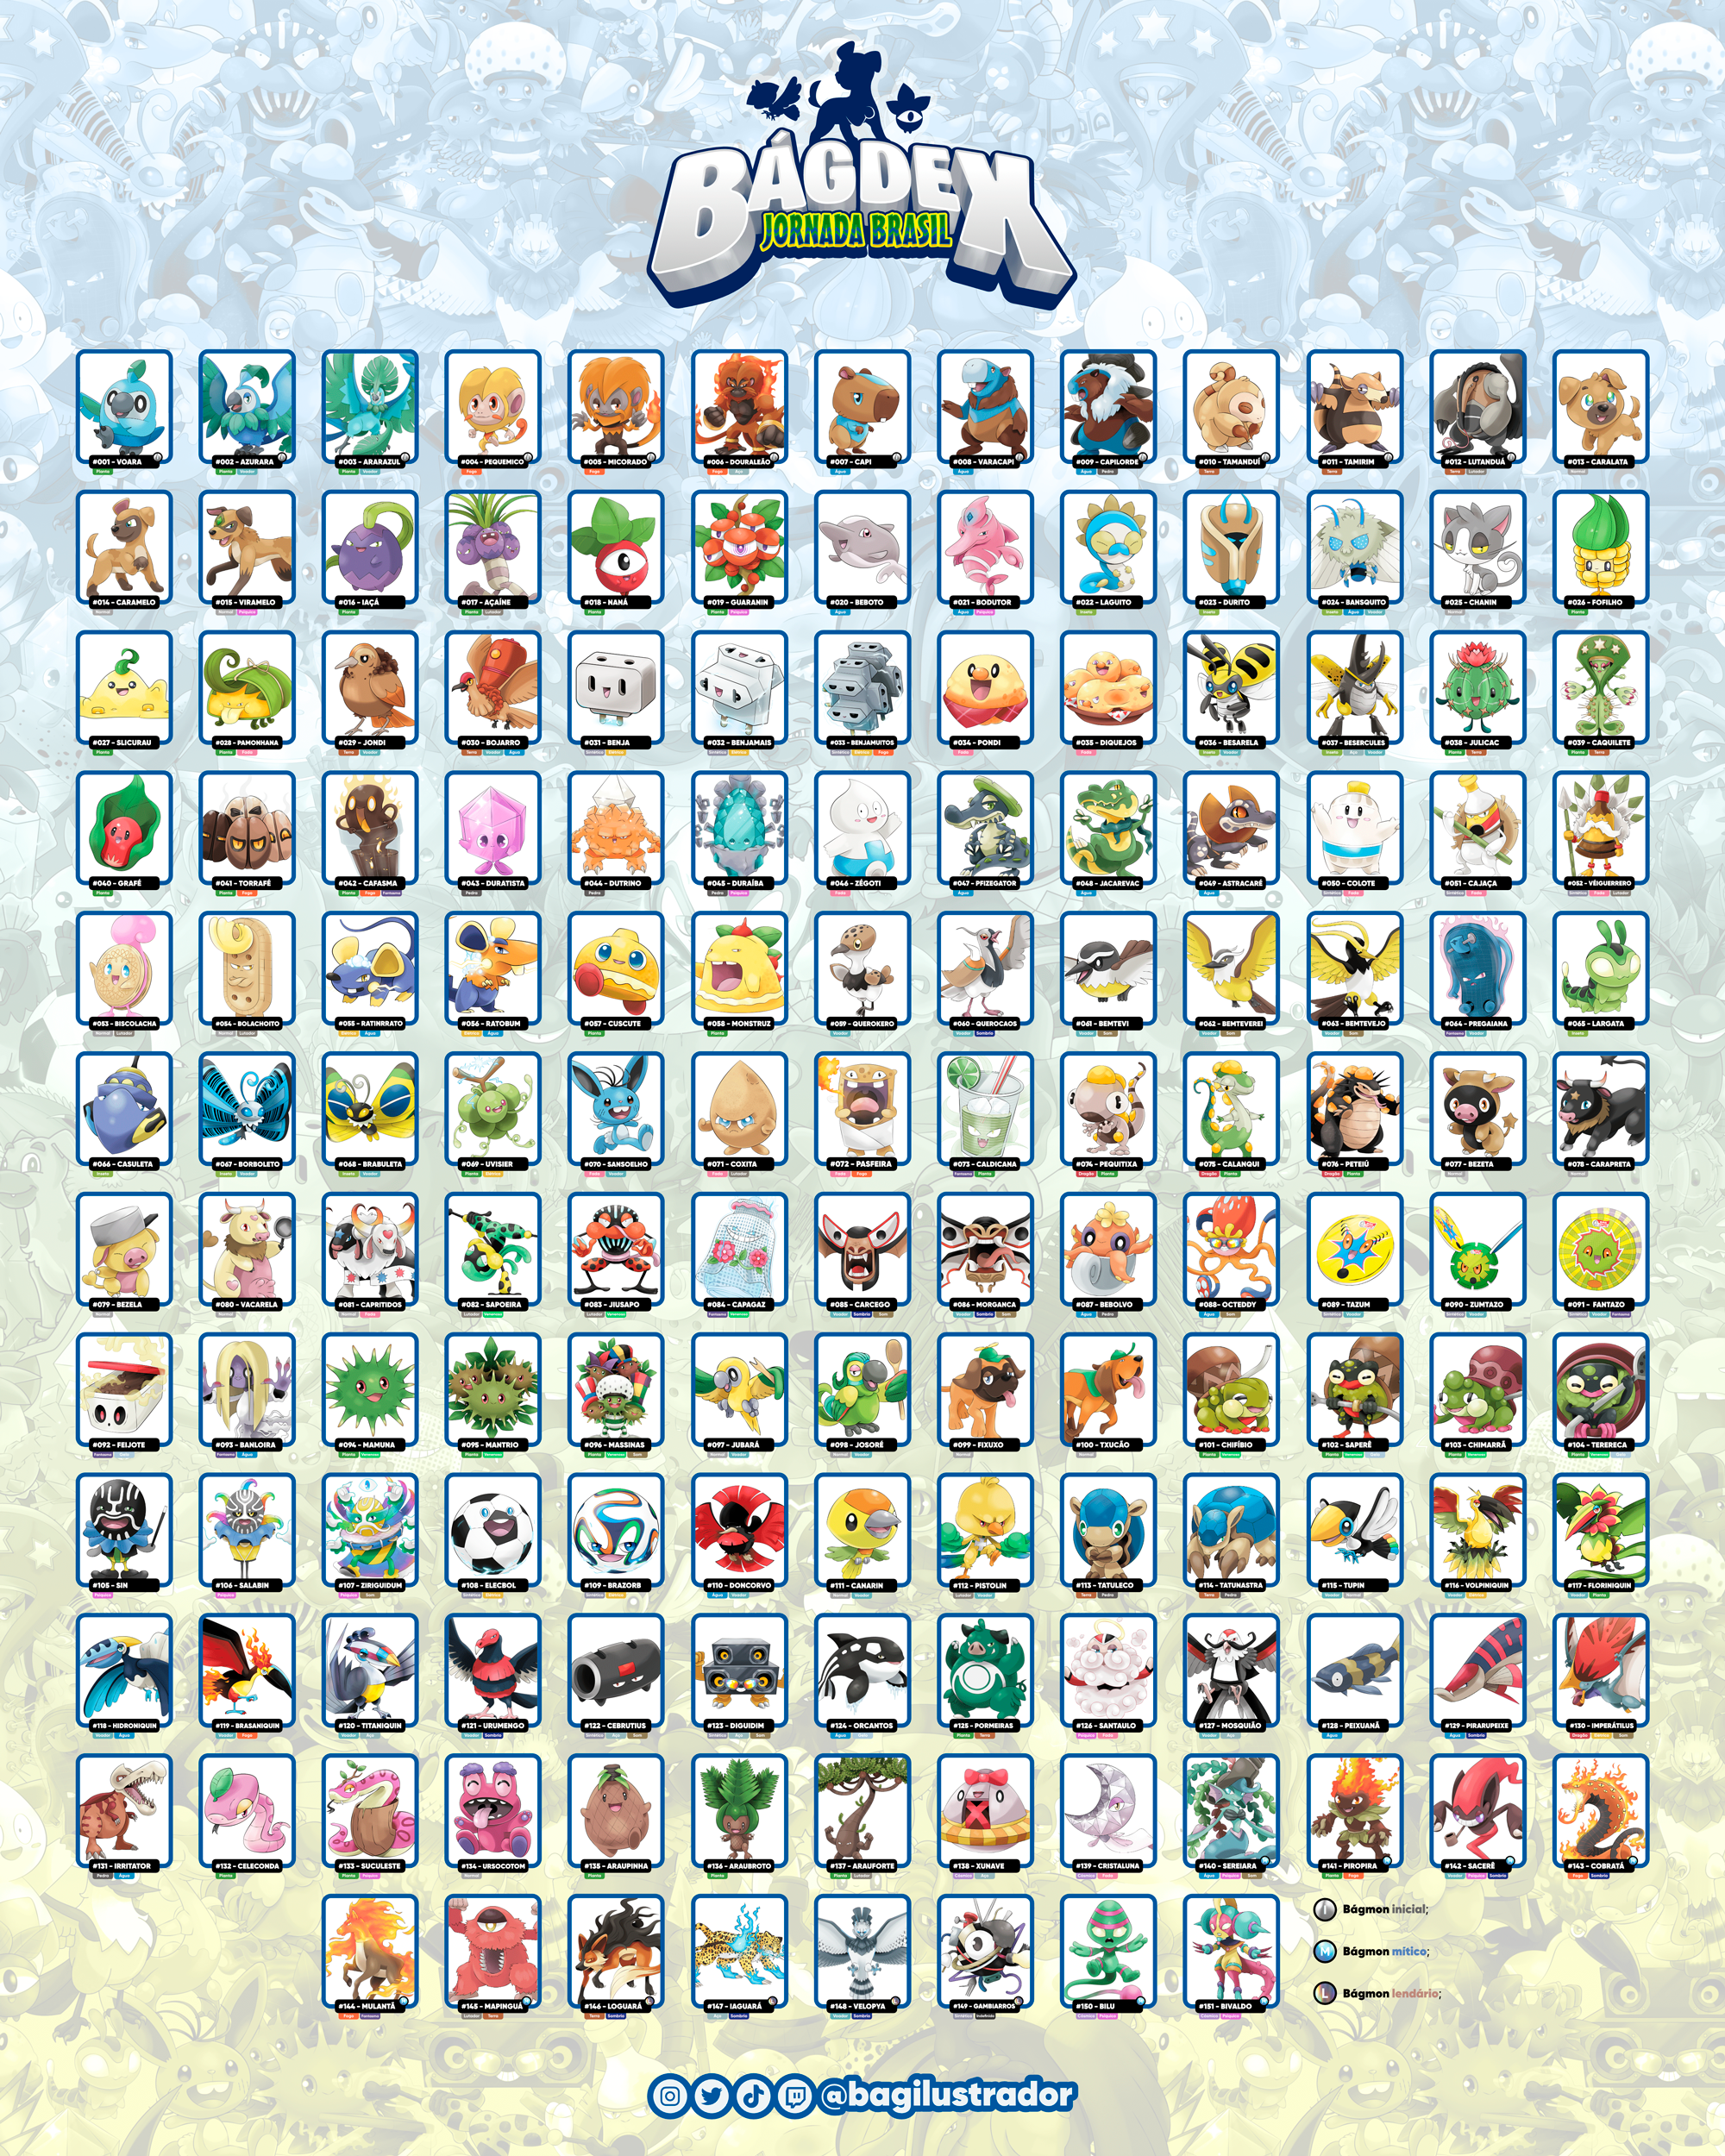 Artista brasileiro cria coleção com 151 Pokémon baseados na